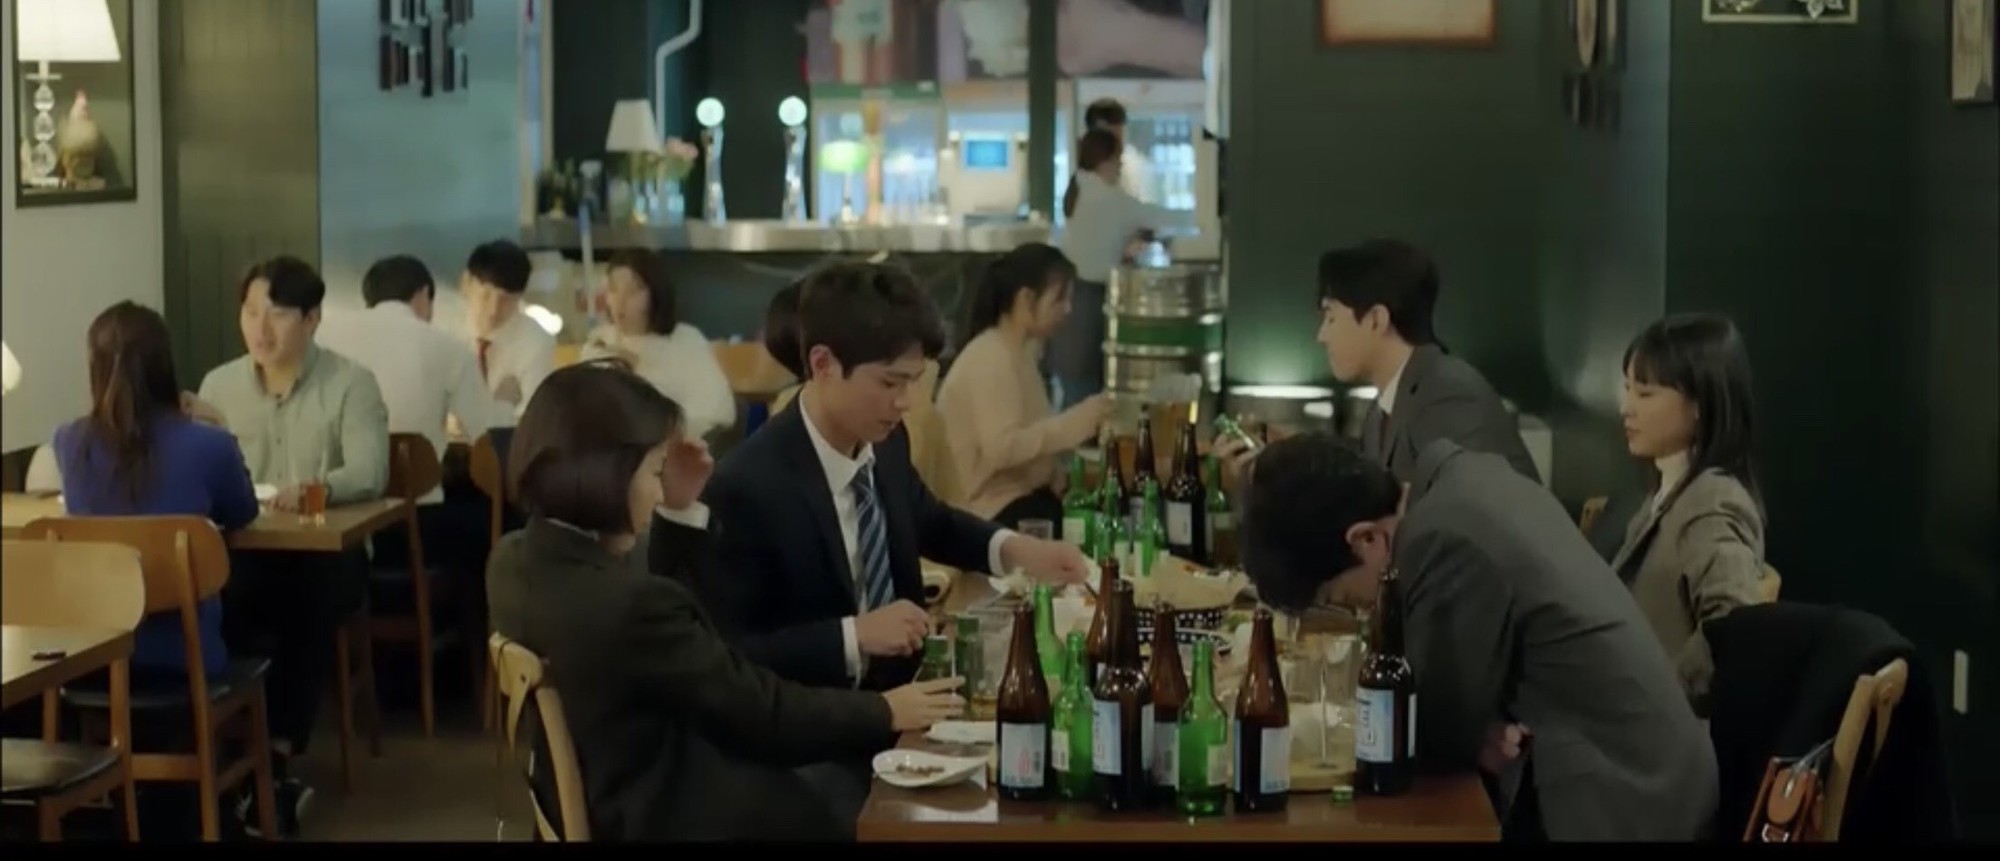 Xem Encounter tập 2 đảm bảo ngất ngây vì ngắm Park Bo Gum say xỉn đáng yêu khó cưỡng - Ảnh 2.